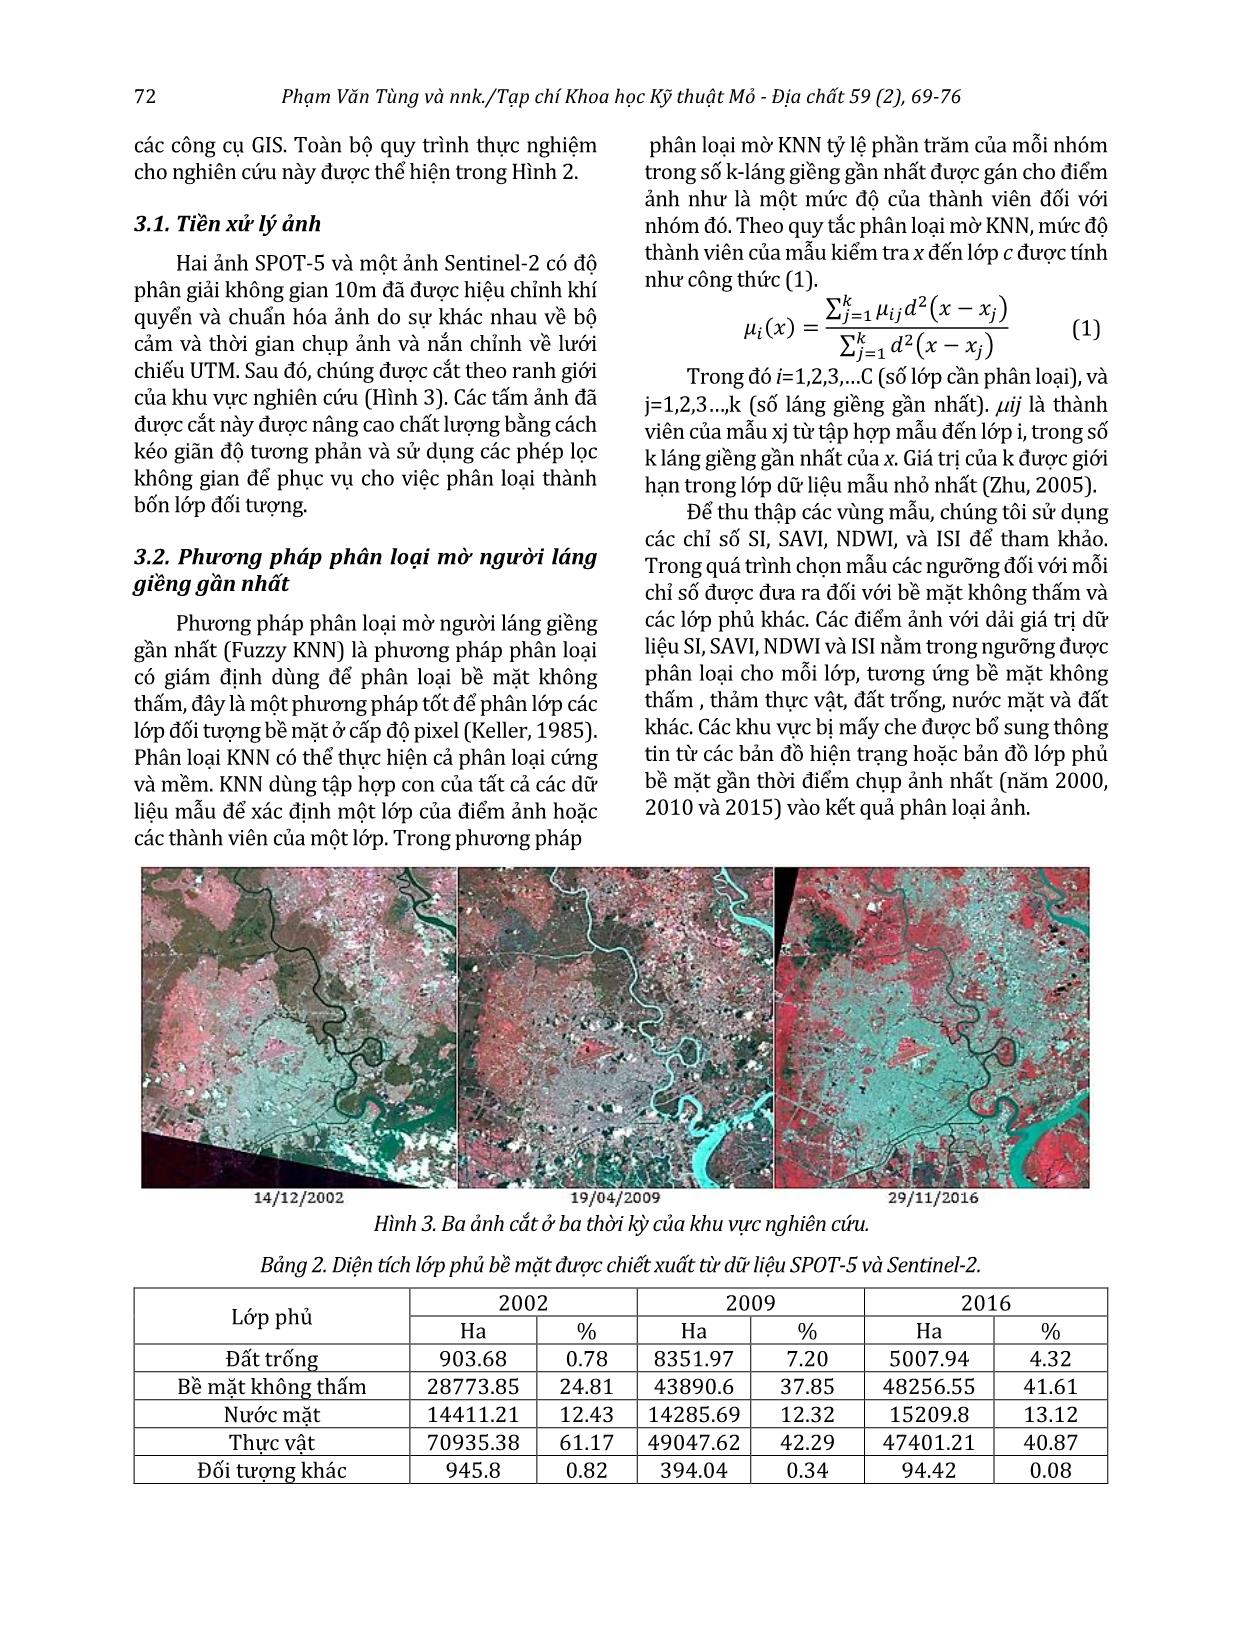 Quan trắc sự mở rộng bề mặt không thấm bằng dữ liệu ảnh Spot-5 và Sentinel-2 ở khu vực Thành phố Hồ Chí Minh trang 4